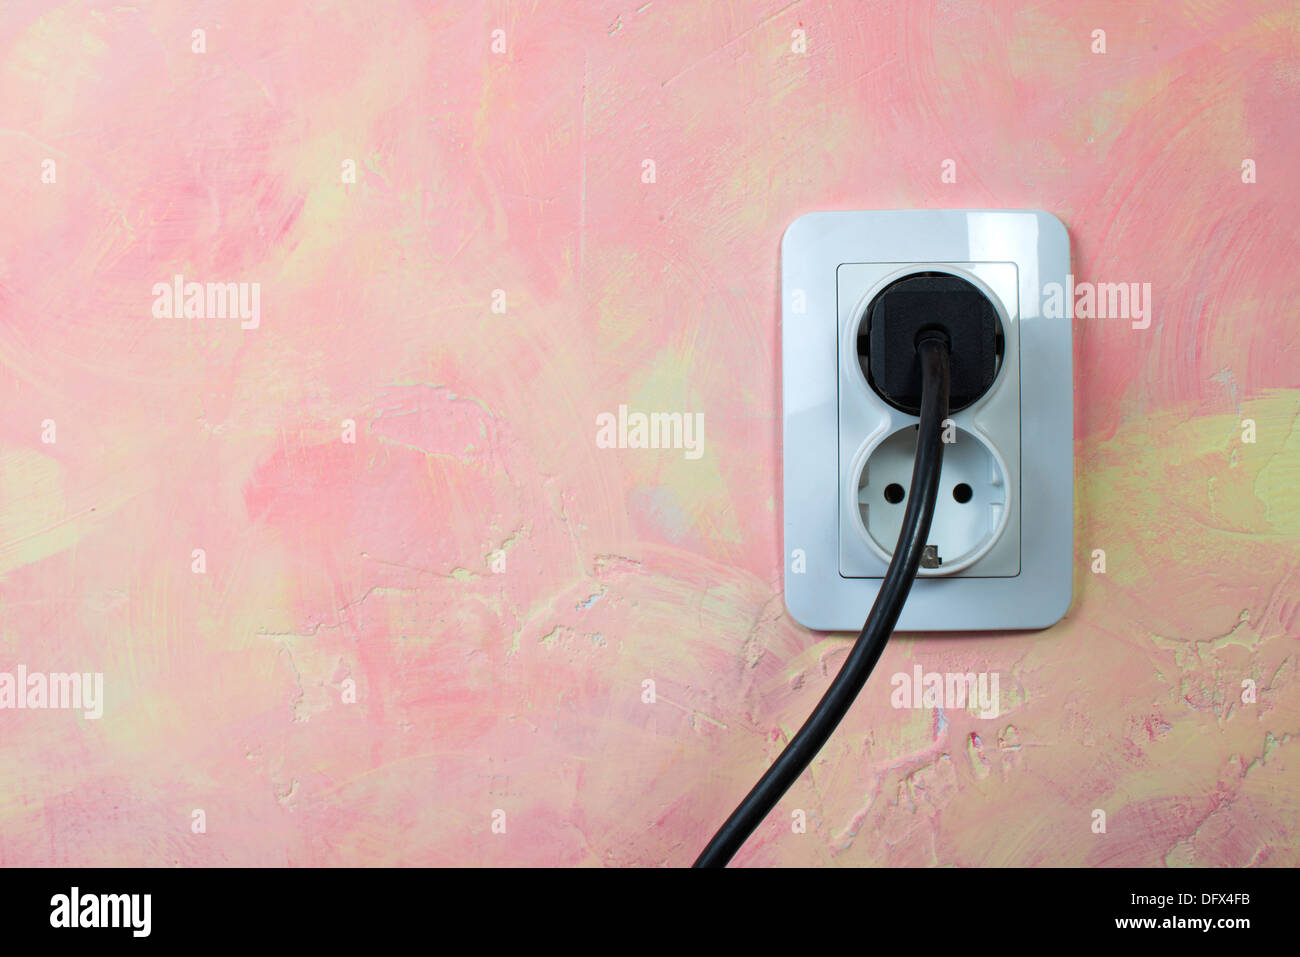 Steckdosen mit Internetkabel an weißer Wand, Nahaufnahme. Stromversorgung  Stockfotografie - Alamy